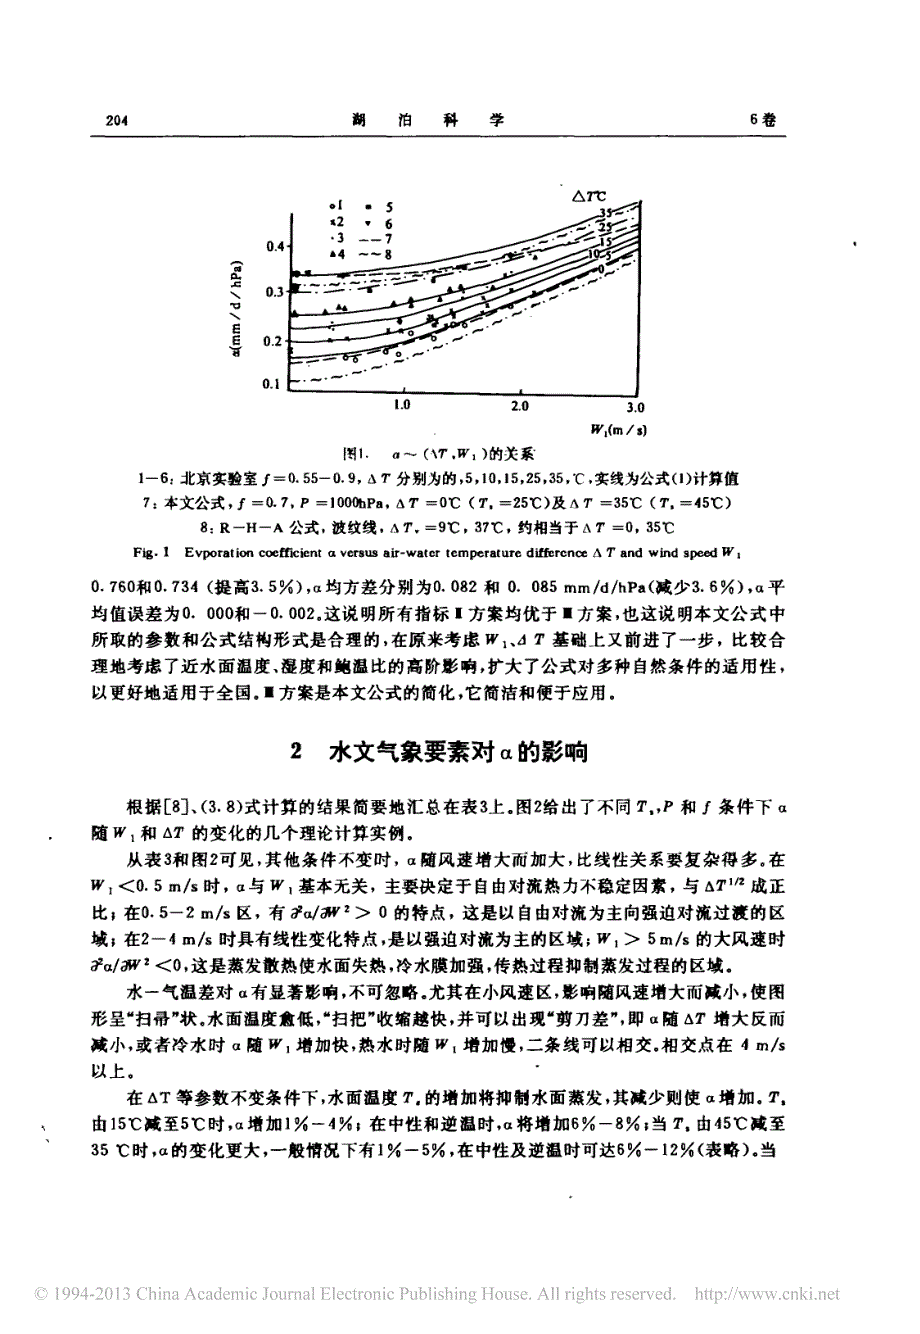 水面蒸发与散热系数公式研究_二_濮培民_第4页